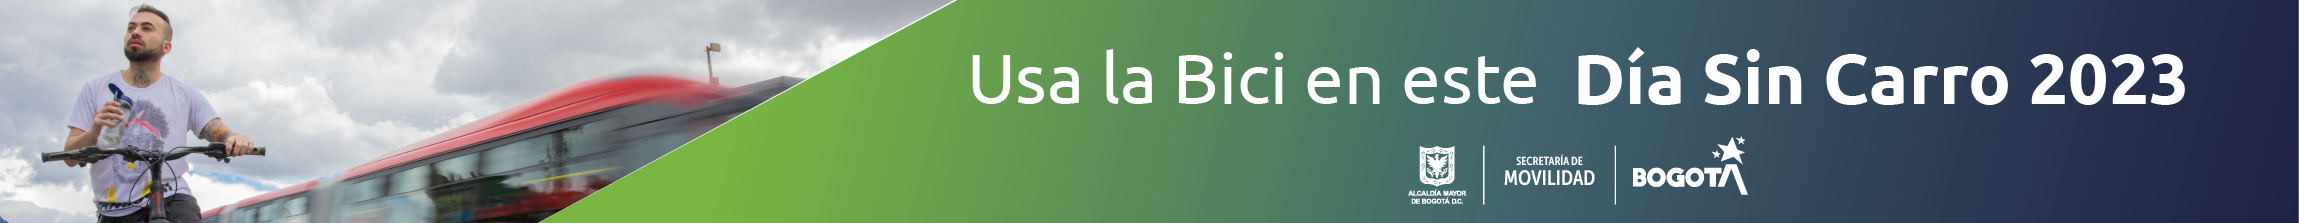 BiciEstaciones en TransMilenio para el Día sin carro 2023